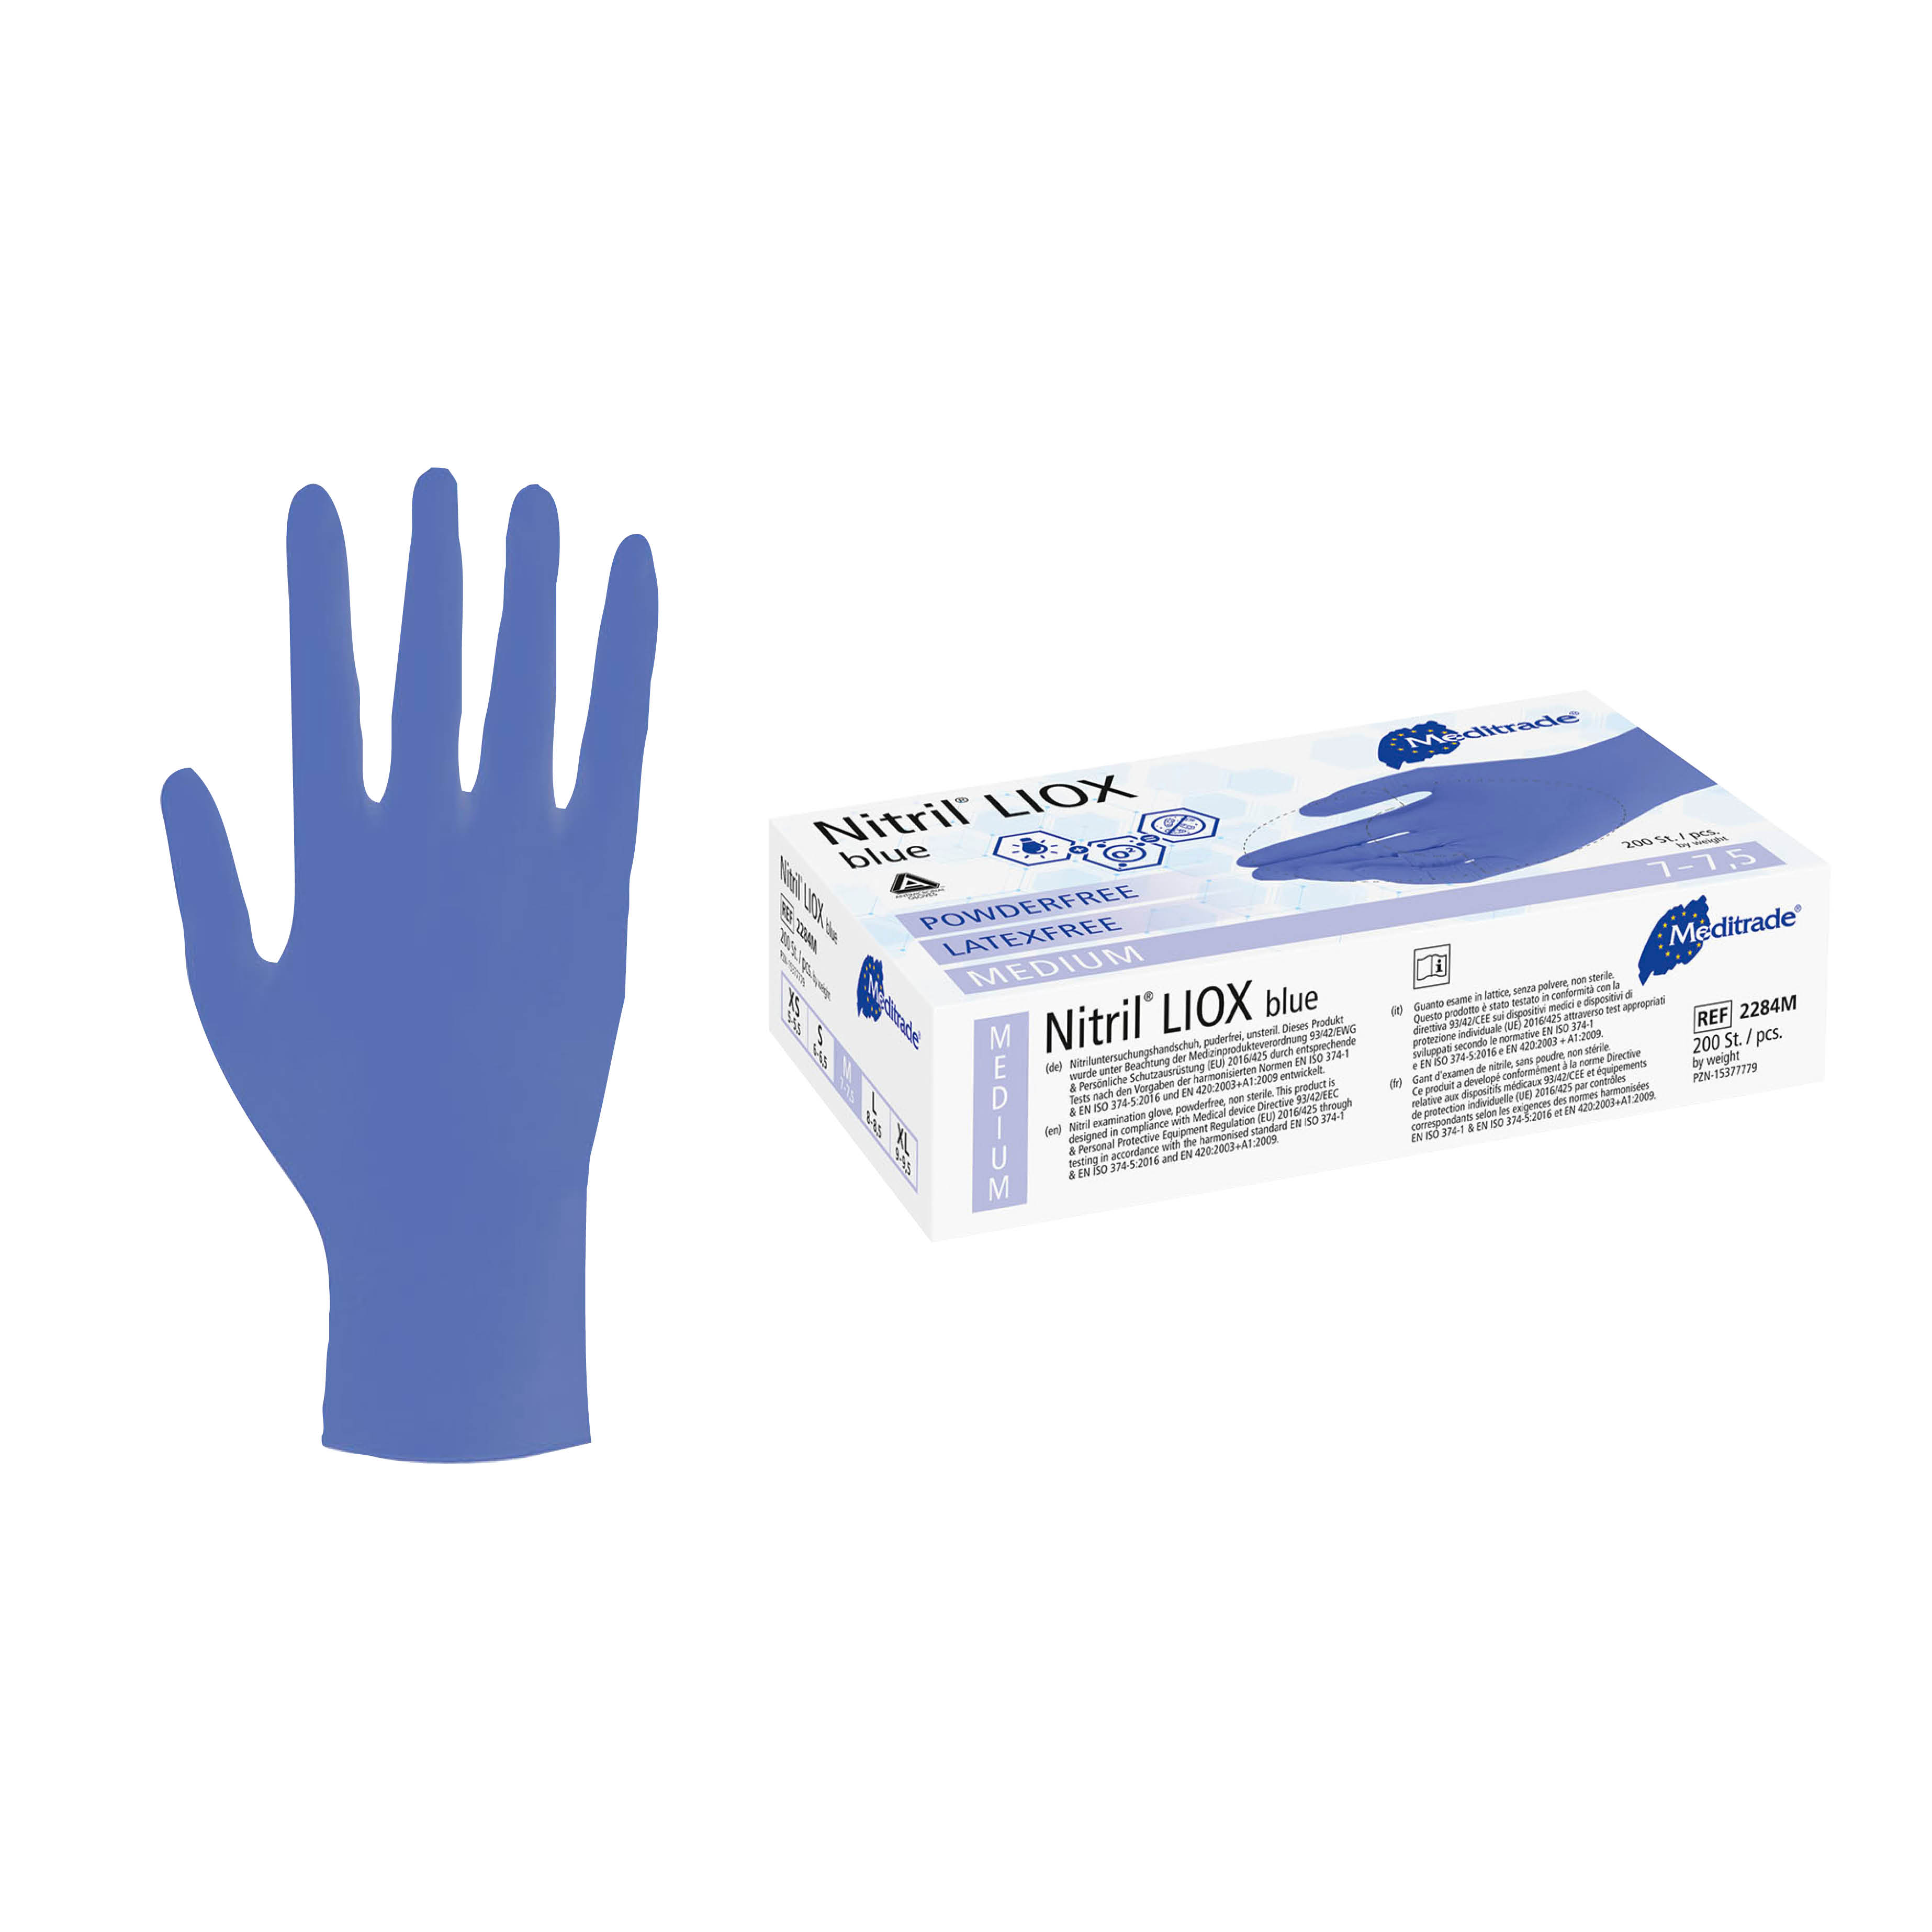 Entdecken Sie hochwertige Nitrill Einmalhandschuhe bei med100, zertifiziert nach DIN EN455. Puderfrei und proteinarm bieten sie einen zuverlässigen Schutz bei der Arbeit im medizinischen Bereich.